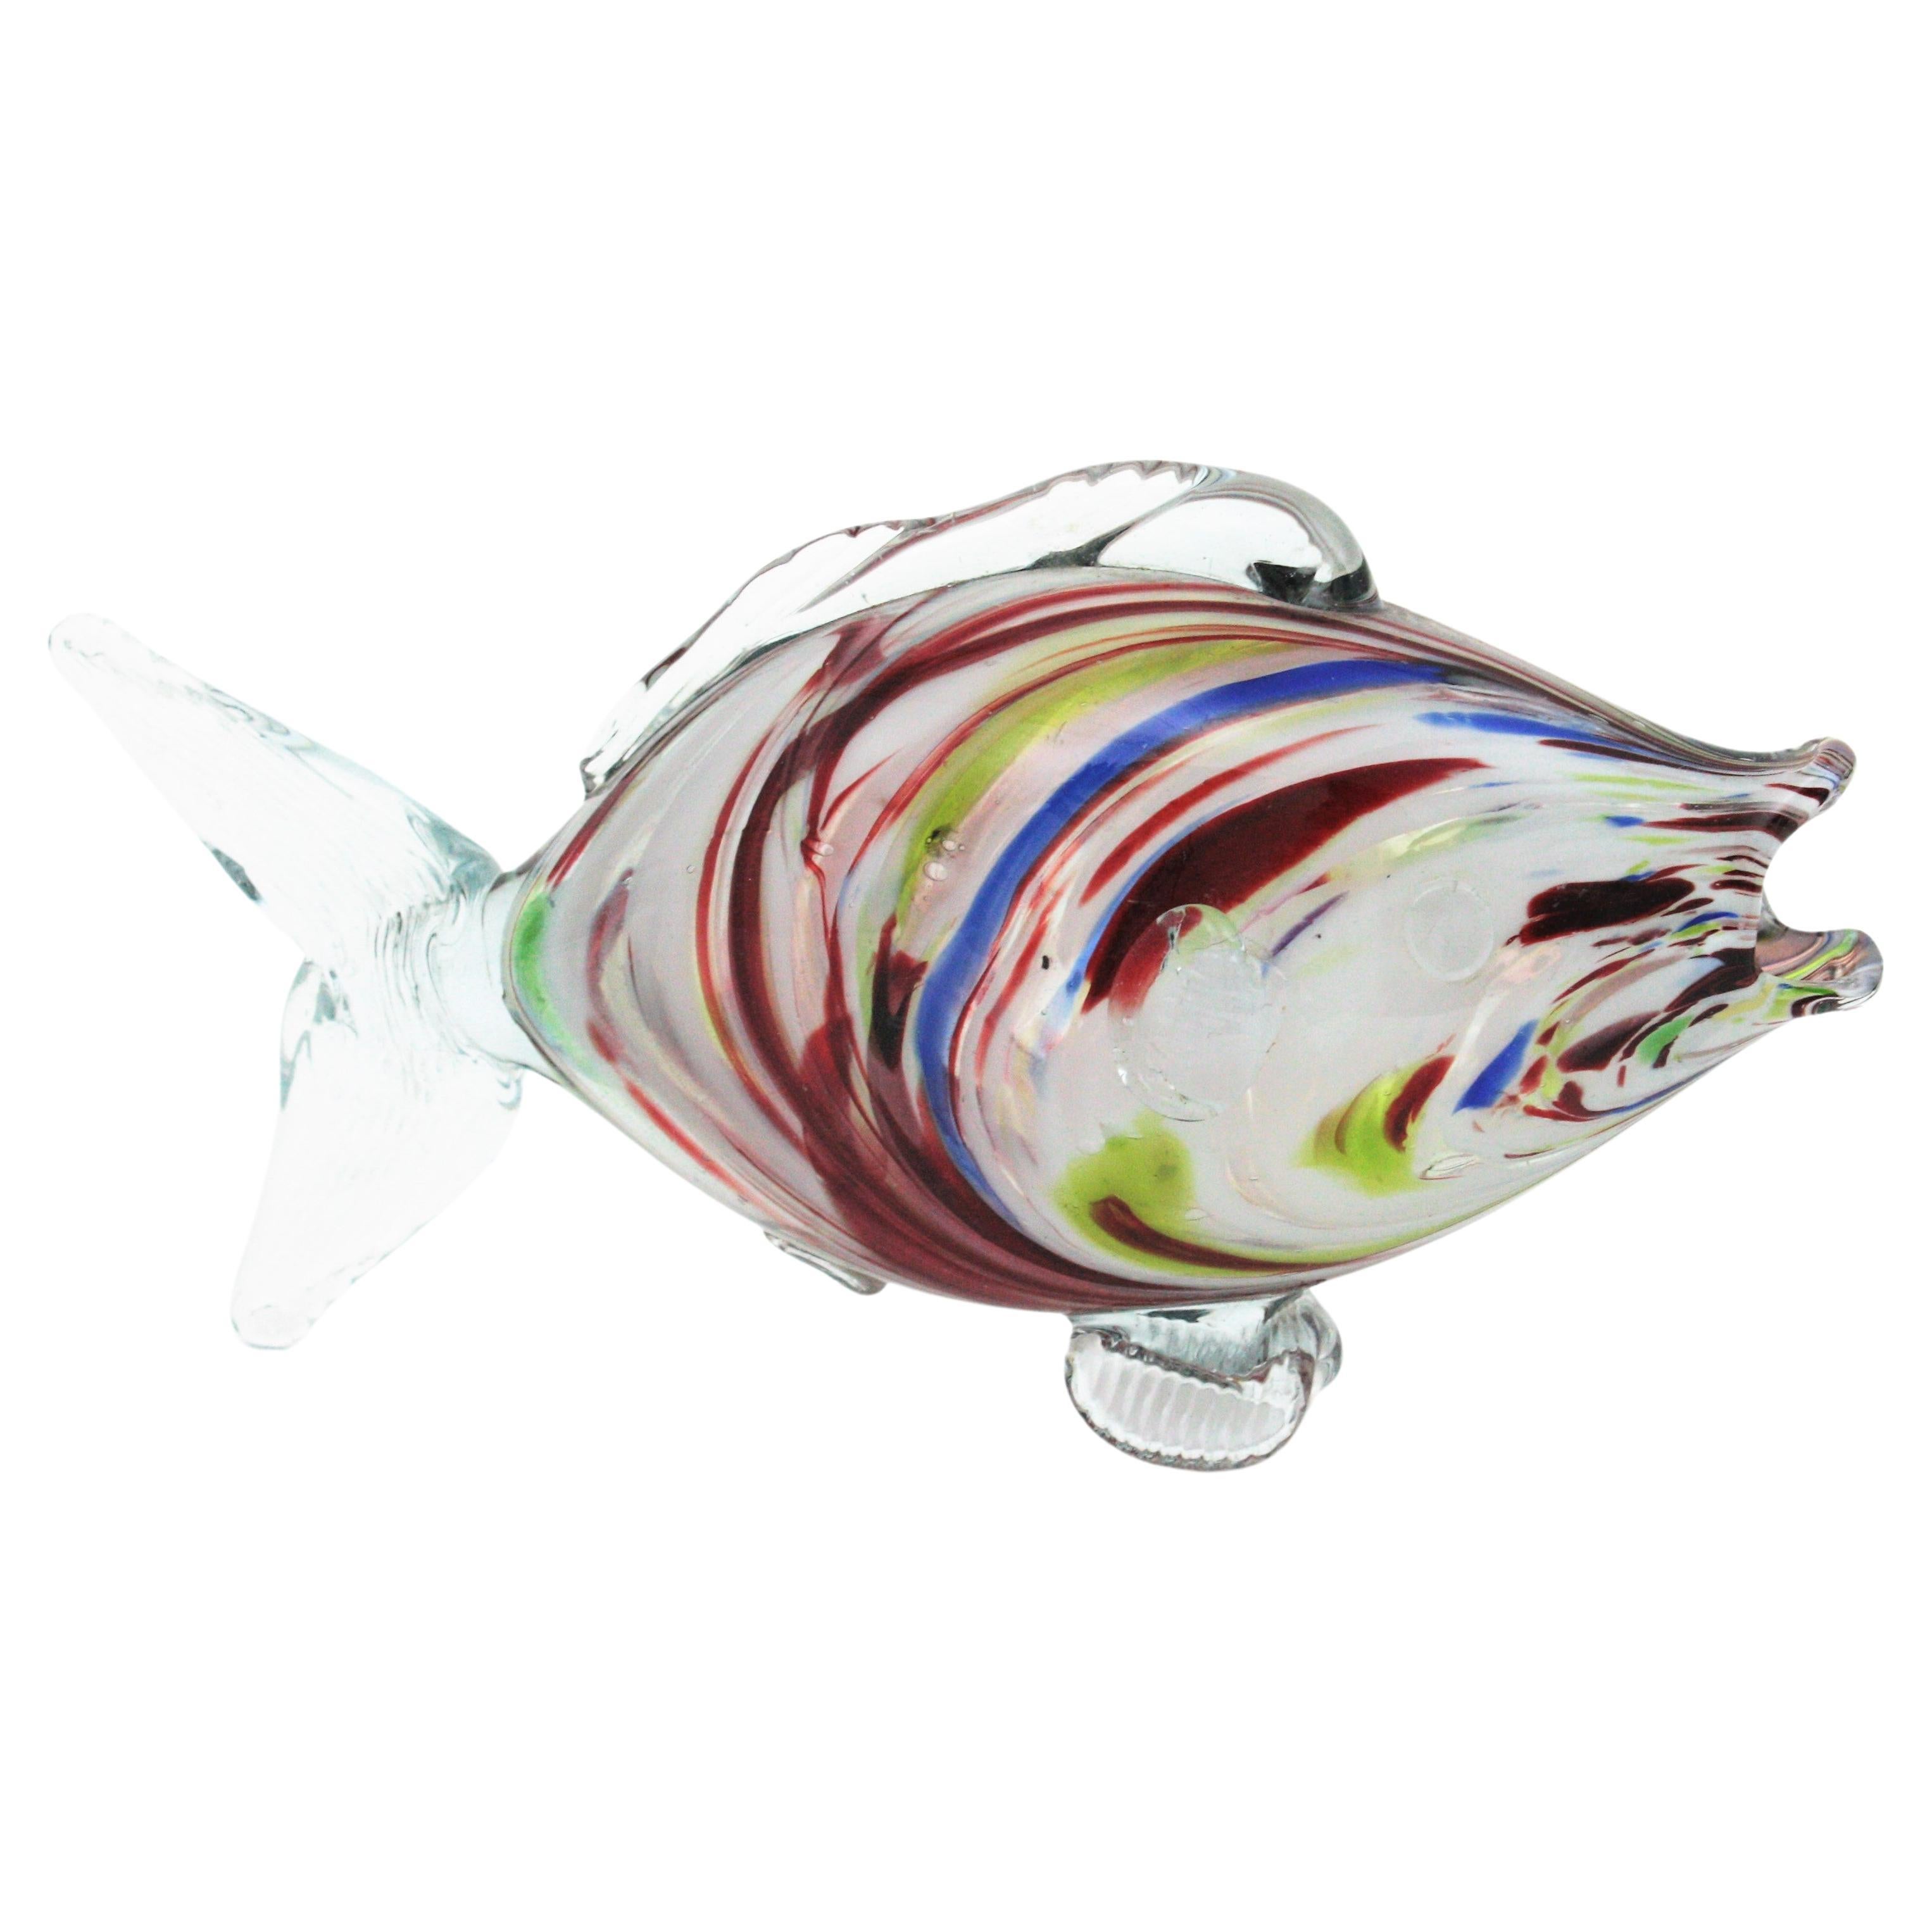 Moderner Fisch aus mundgeblasenem Muranoglas mit klarem Glaskörper und Streifen in roten und weißen Farben sowie Akzenten in Blau und Grün.
Italien 1950er Jahre. 
Jede Seite des Körpers hat ein anderes Design.
Maße: 24 cm B x 13 cm H x 7 cm